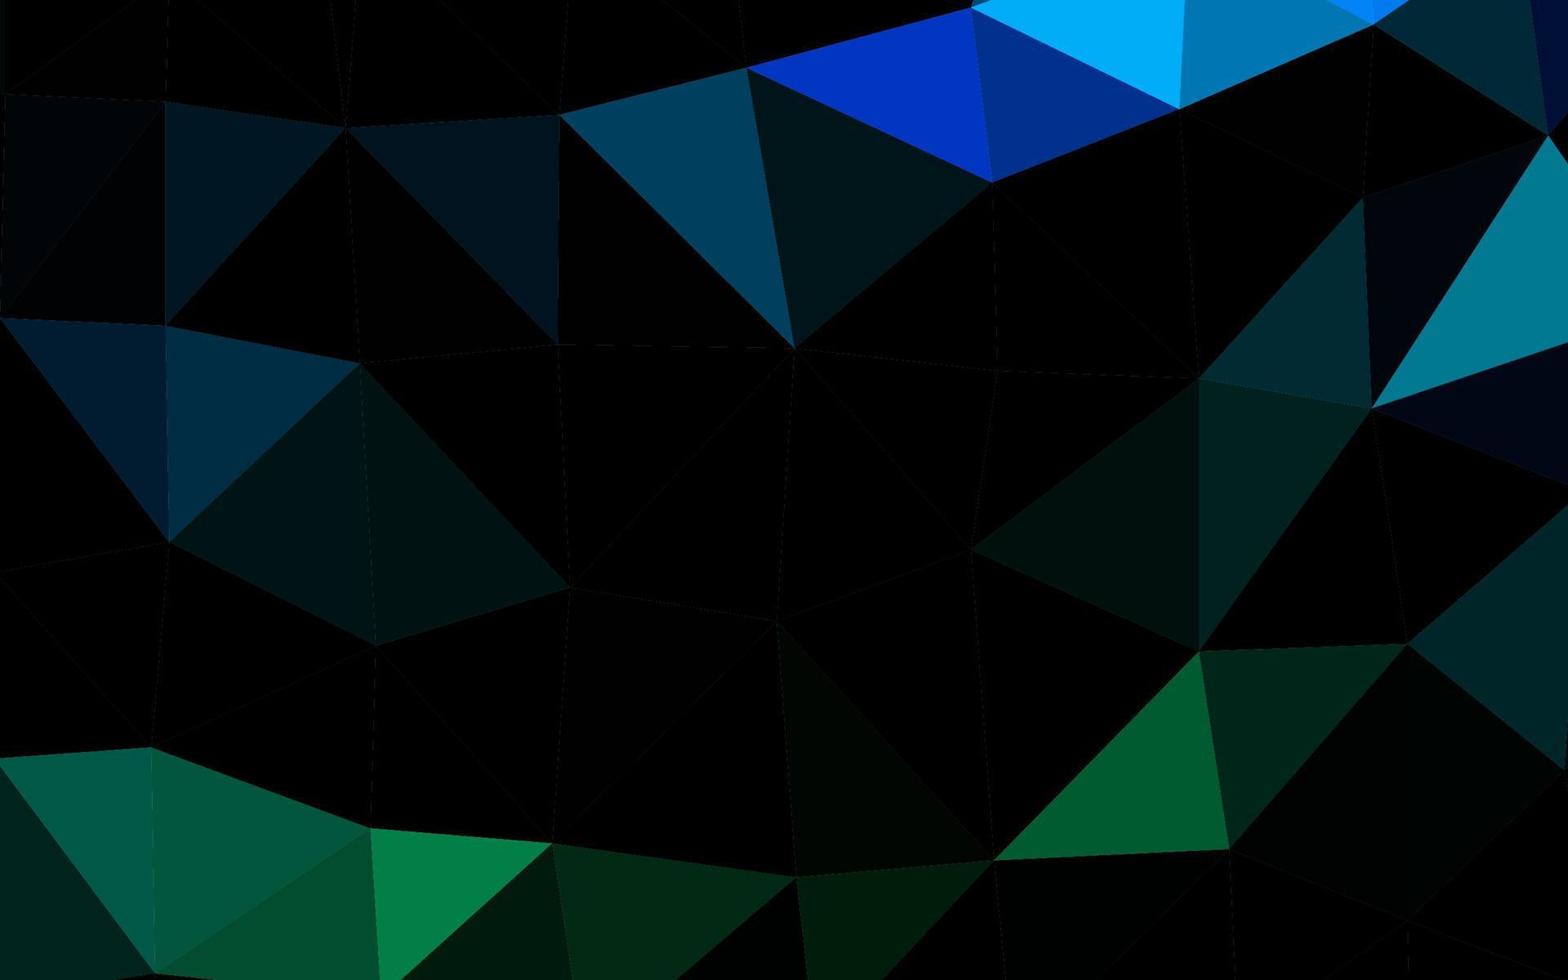 couverture polygonale abstraite de vecteur bleu clair, vert.